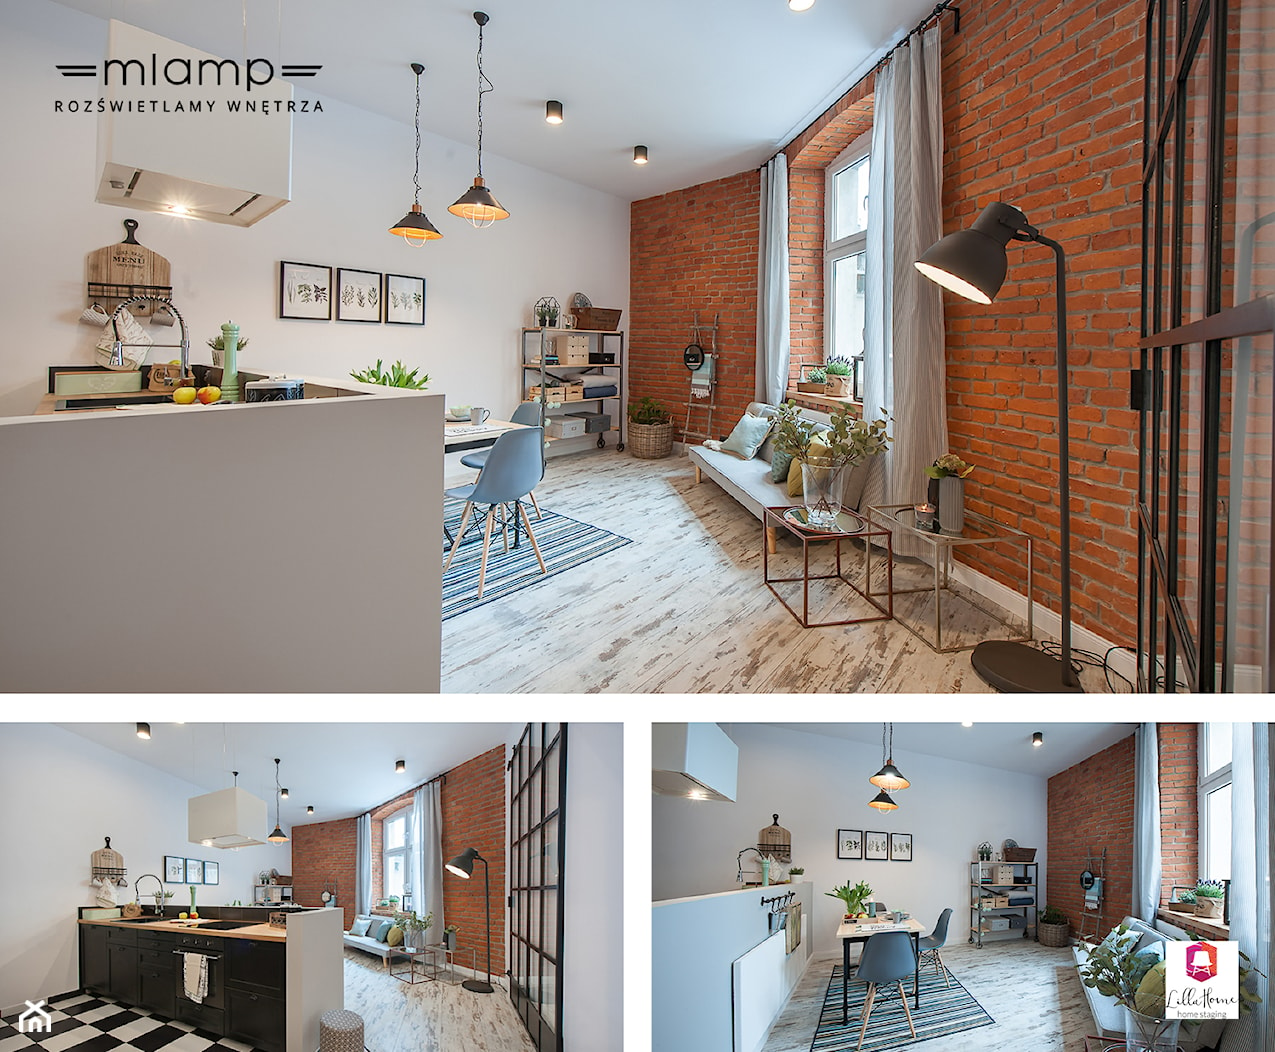 Eklektyczne mieszkanie z industrialnym oświetleniem - Salon, styl nowoczesny - zdjęcie od =mlamp.pl= | rozświetlamy wnętrza - Homebook